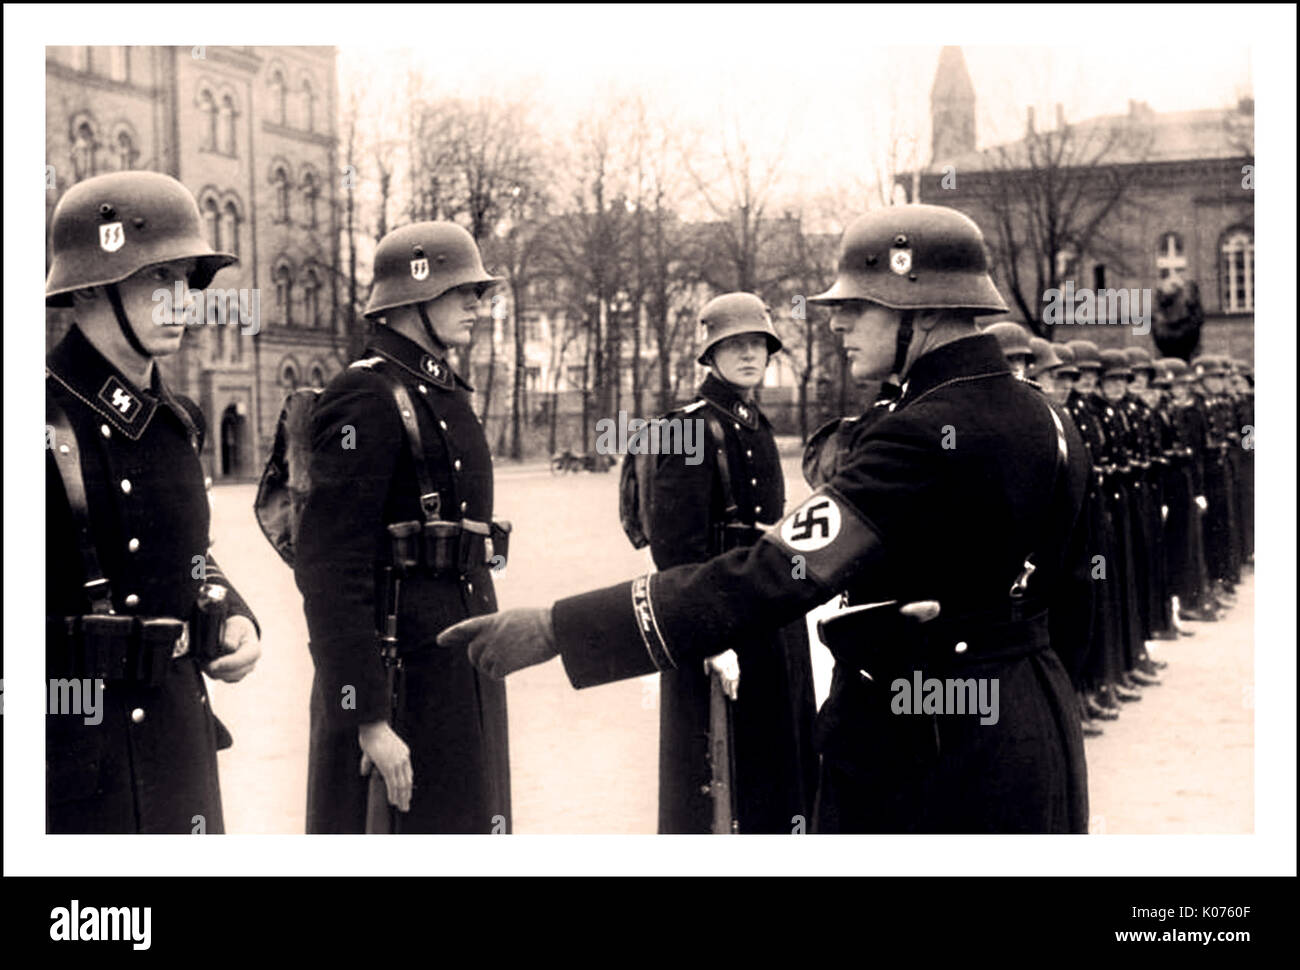 LEIBSTANDARTE PARADE Vintage pre-WW2 Schwarz/Weiß Foto der Männer der Leibstandarte "Adolf Hitler" Waffen-SS-Truppen an der Lichterfelde Kaserne in Berlin, Deutschland, 22. November 1938. Stockfoto